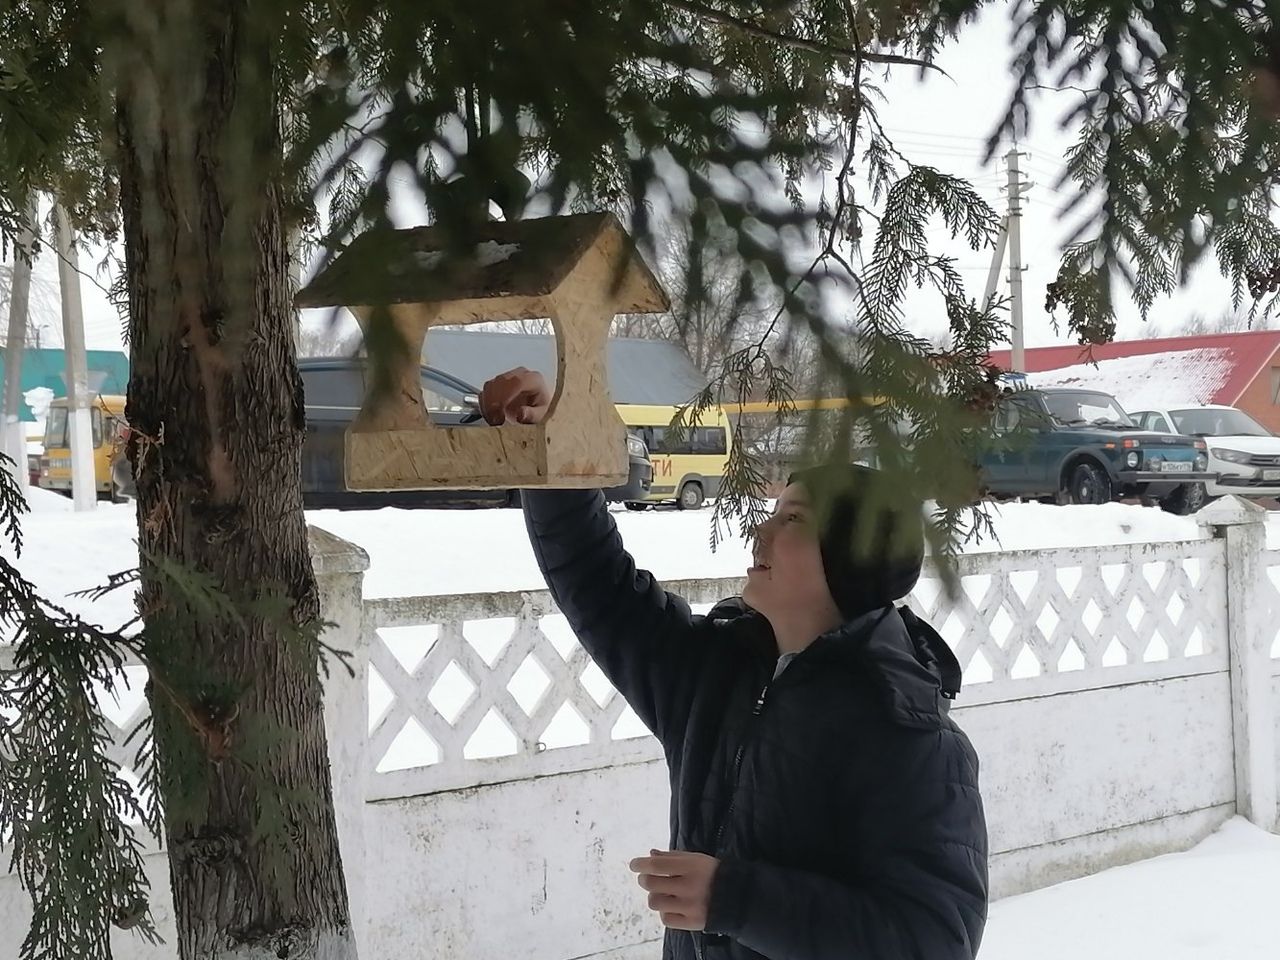 29 января активисты школьного лесничества "Зеленый патруль" организовали акцию "Поможем птицам зимой"❄